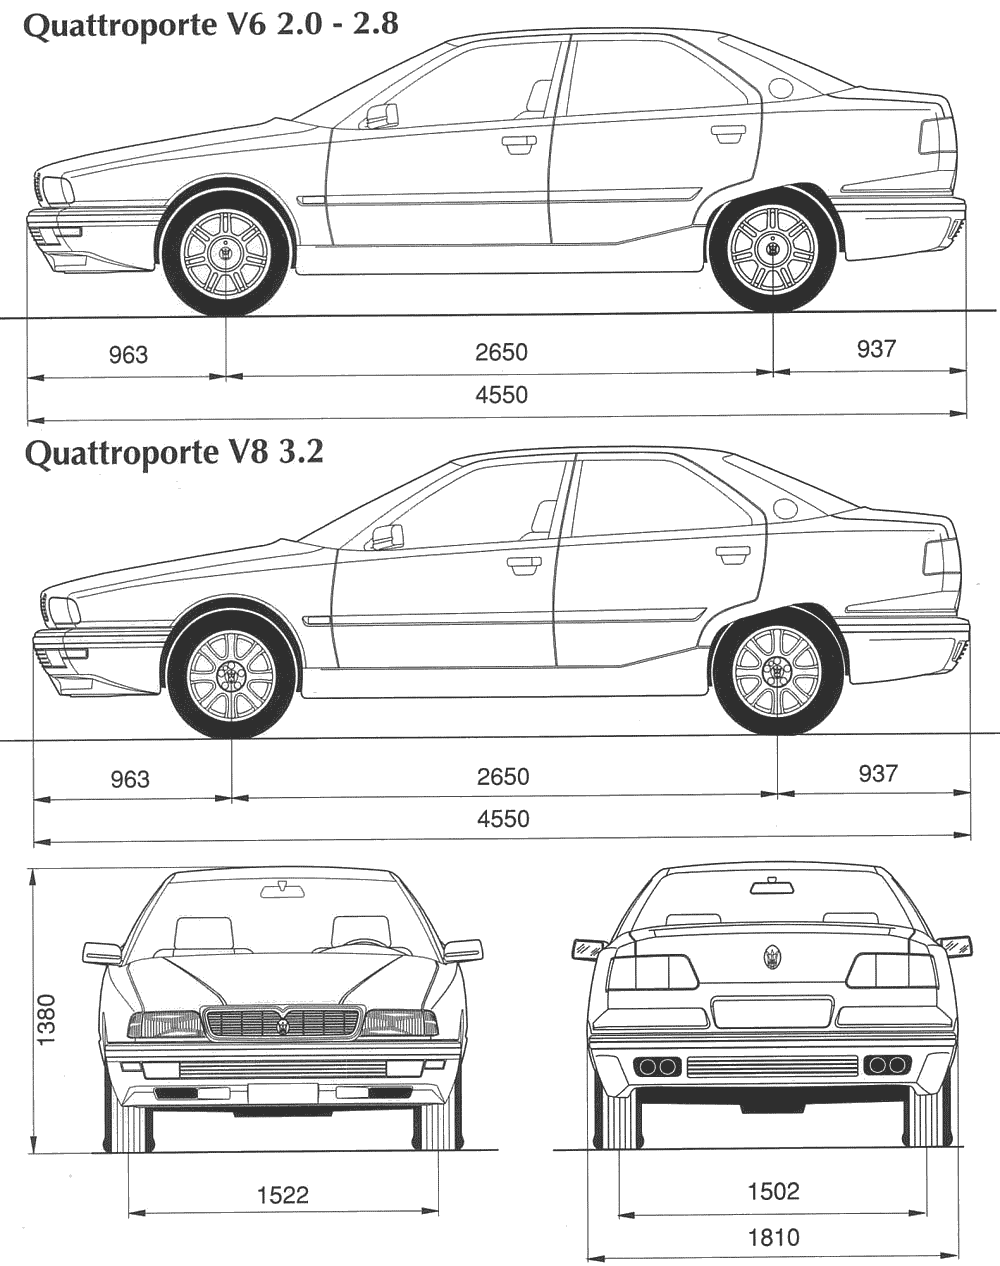 Cotxe Maserati Quattroporte